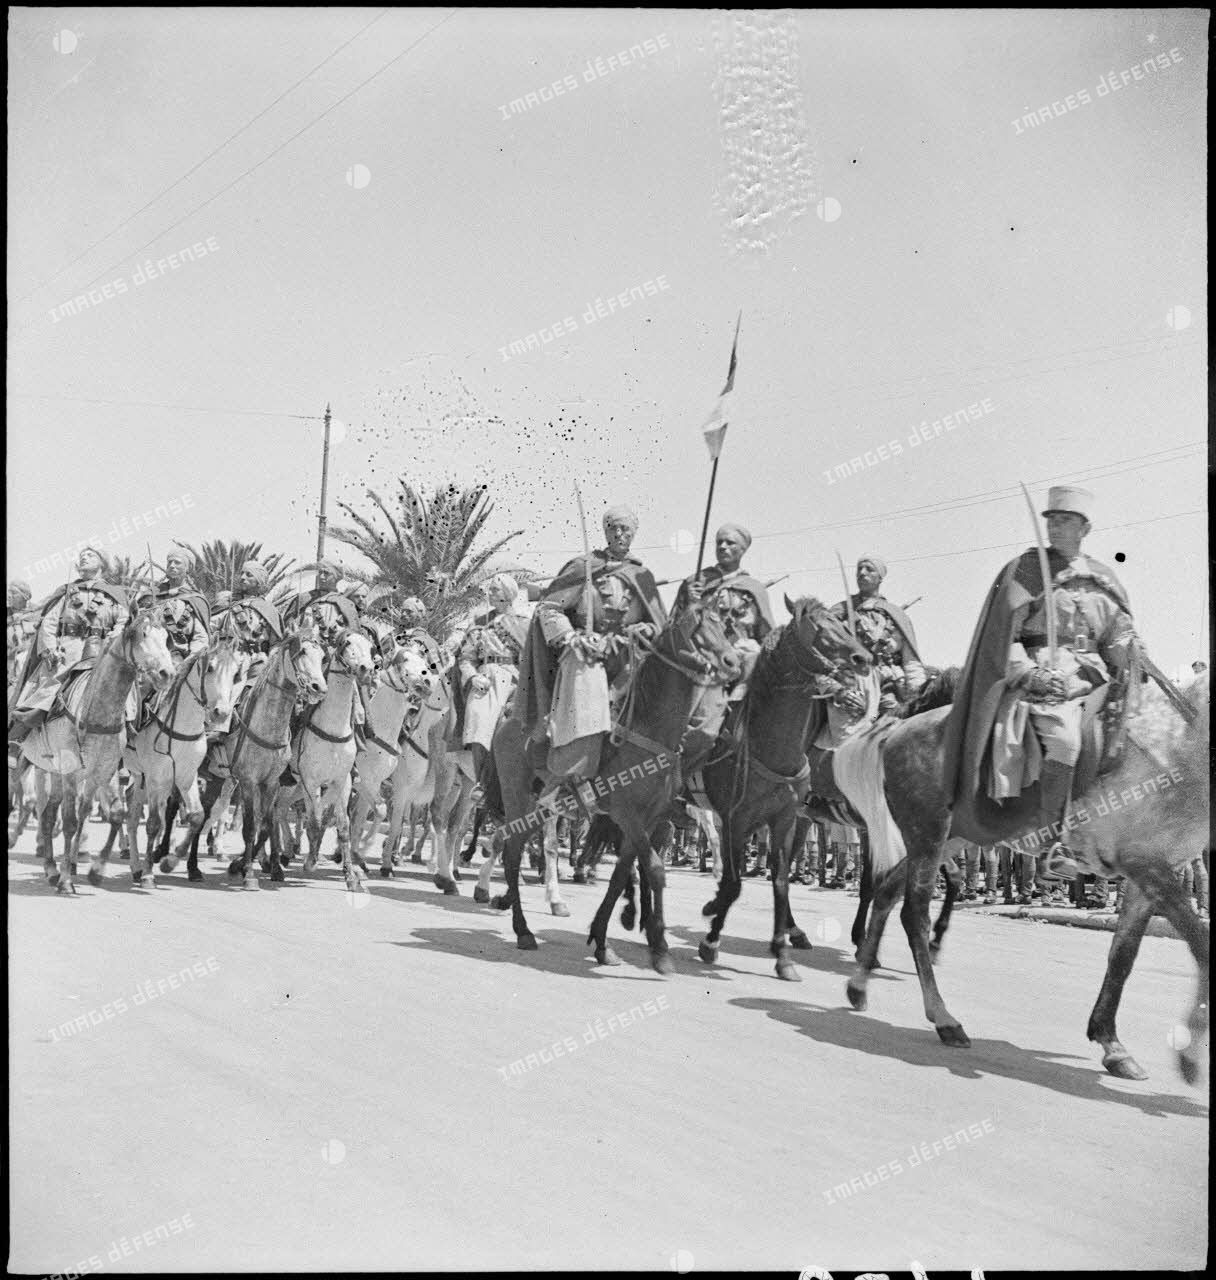 Une unité de spahis de l'armée d'Afrique défile lors de la cérémonie célébrant la victoire alliée à l'issue de la campagne de Tunisie.